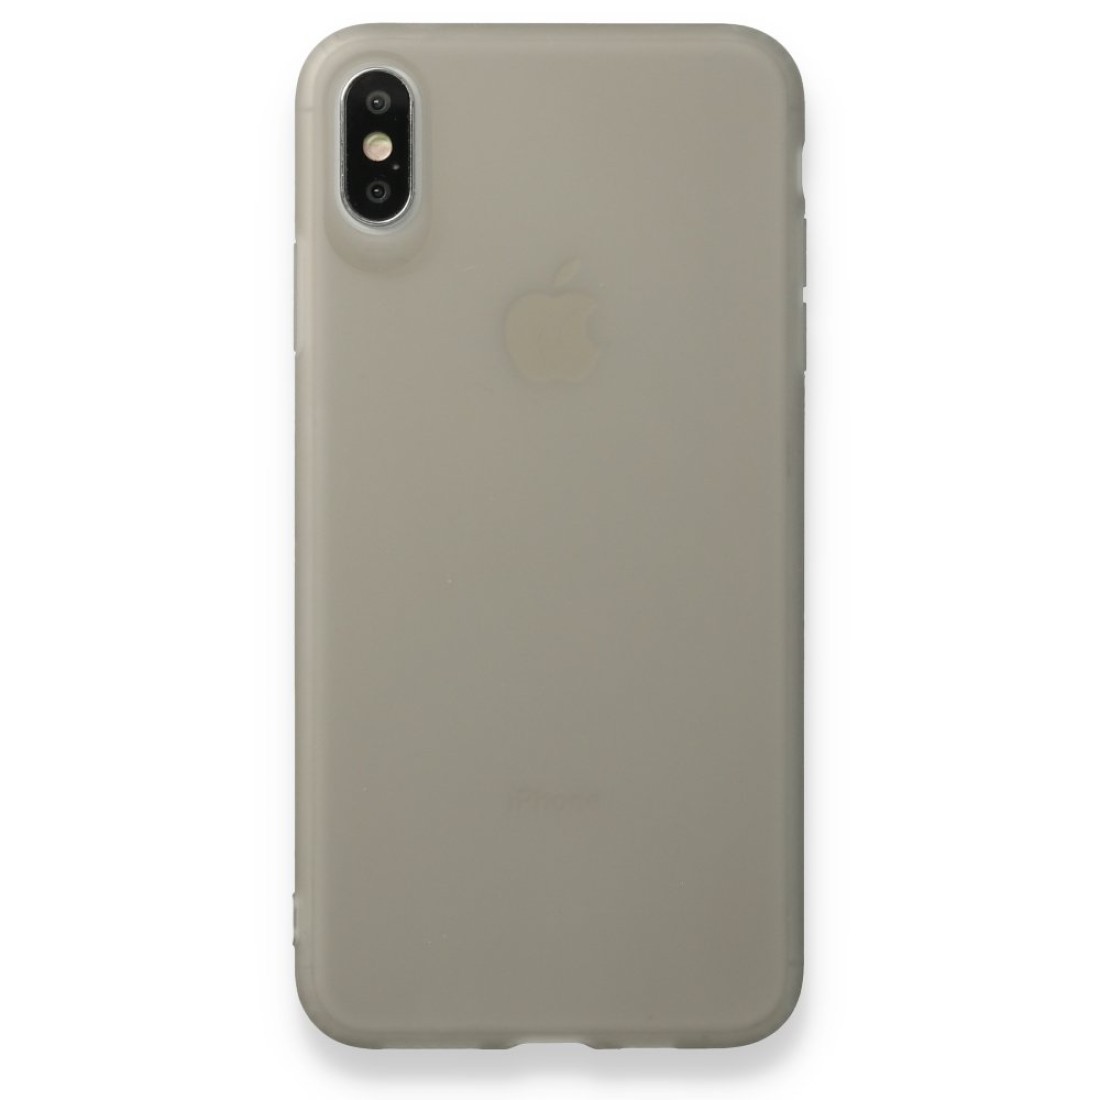 Apple iPhone XS Max Kılıf Hopi Silikon - Füme